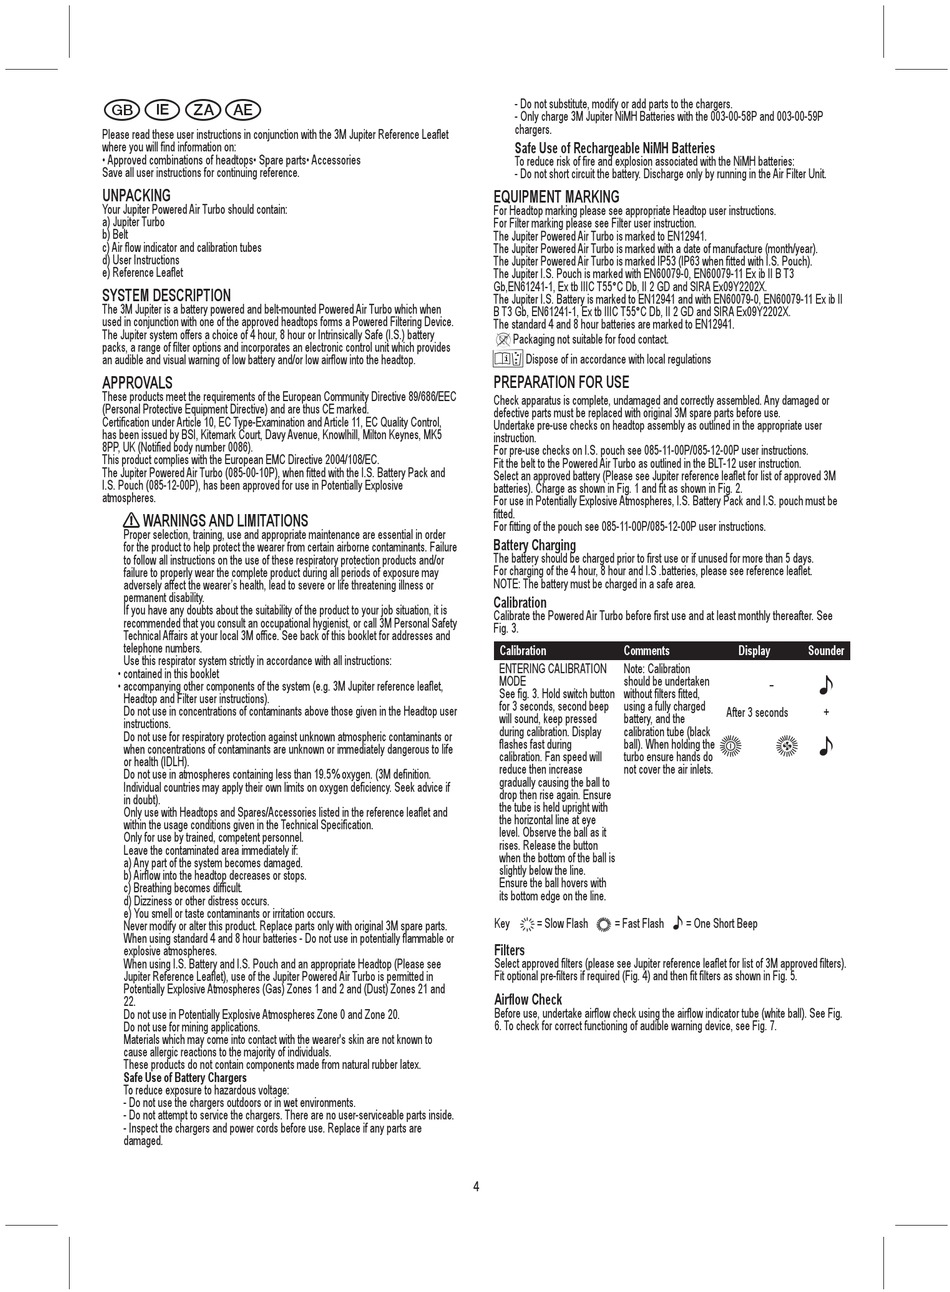 System Description - 3M Jupiter Bedienungsanleitung [Seite 4] | ManualsLib